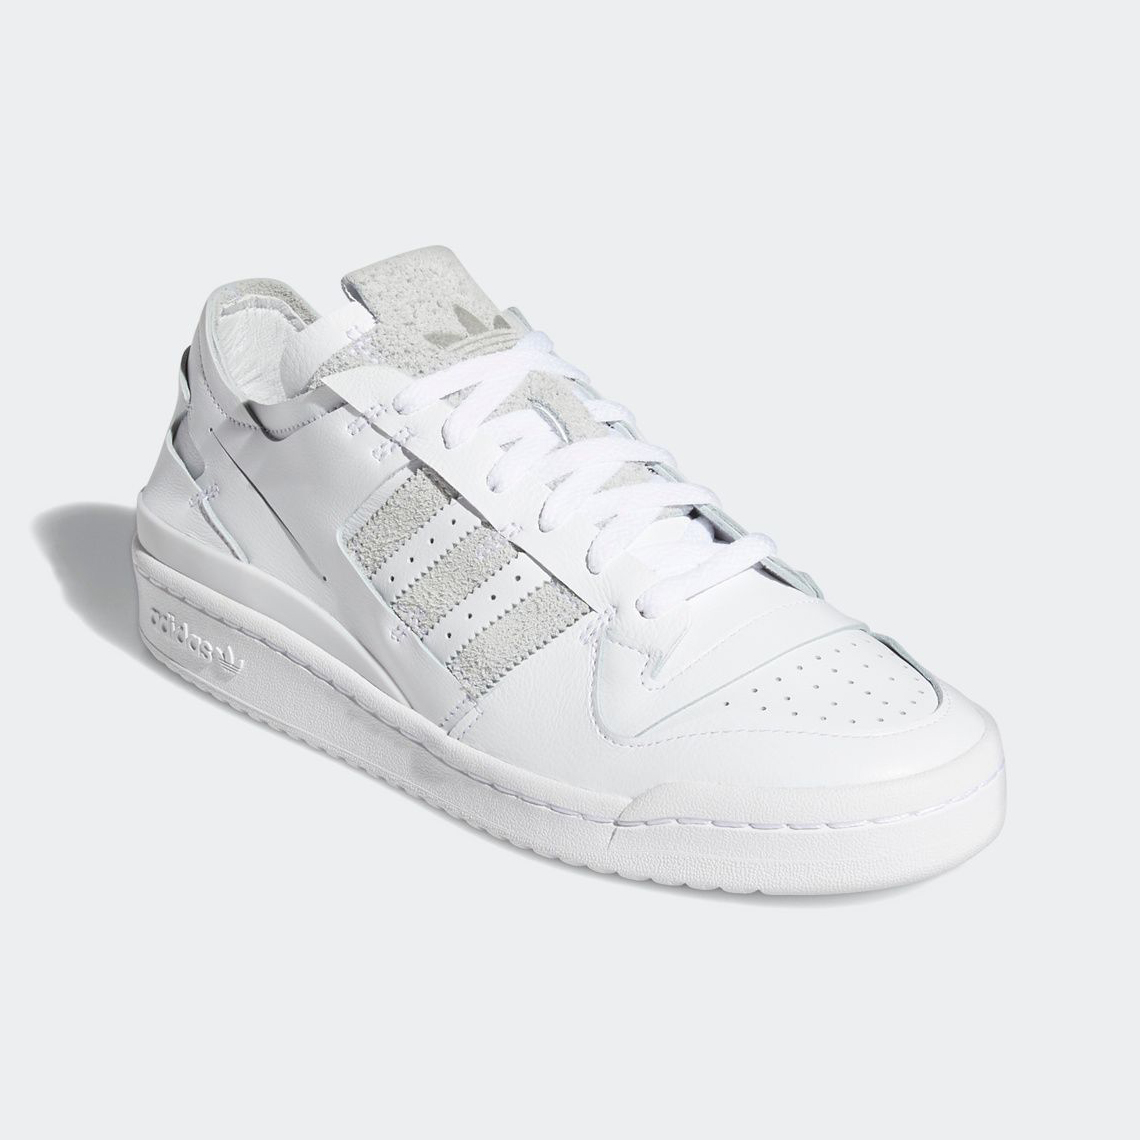 Adidas Forum 84 Lo Minimalist White Grey Fy7997 5